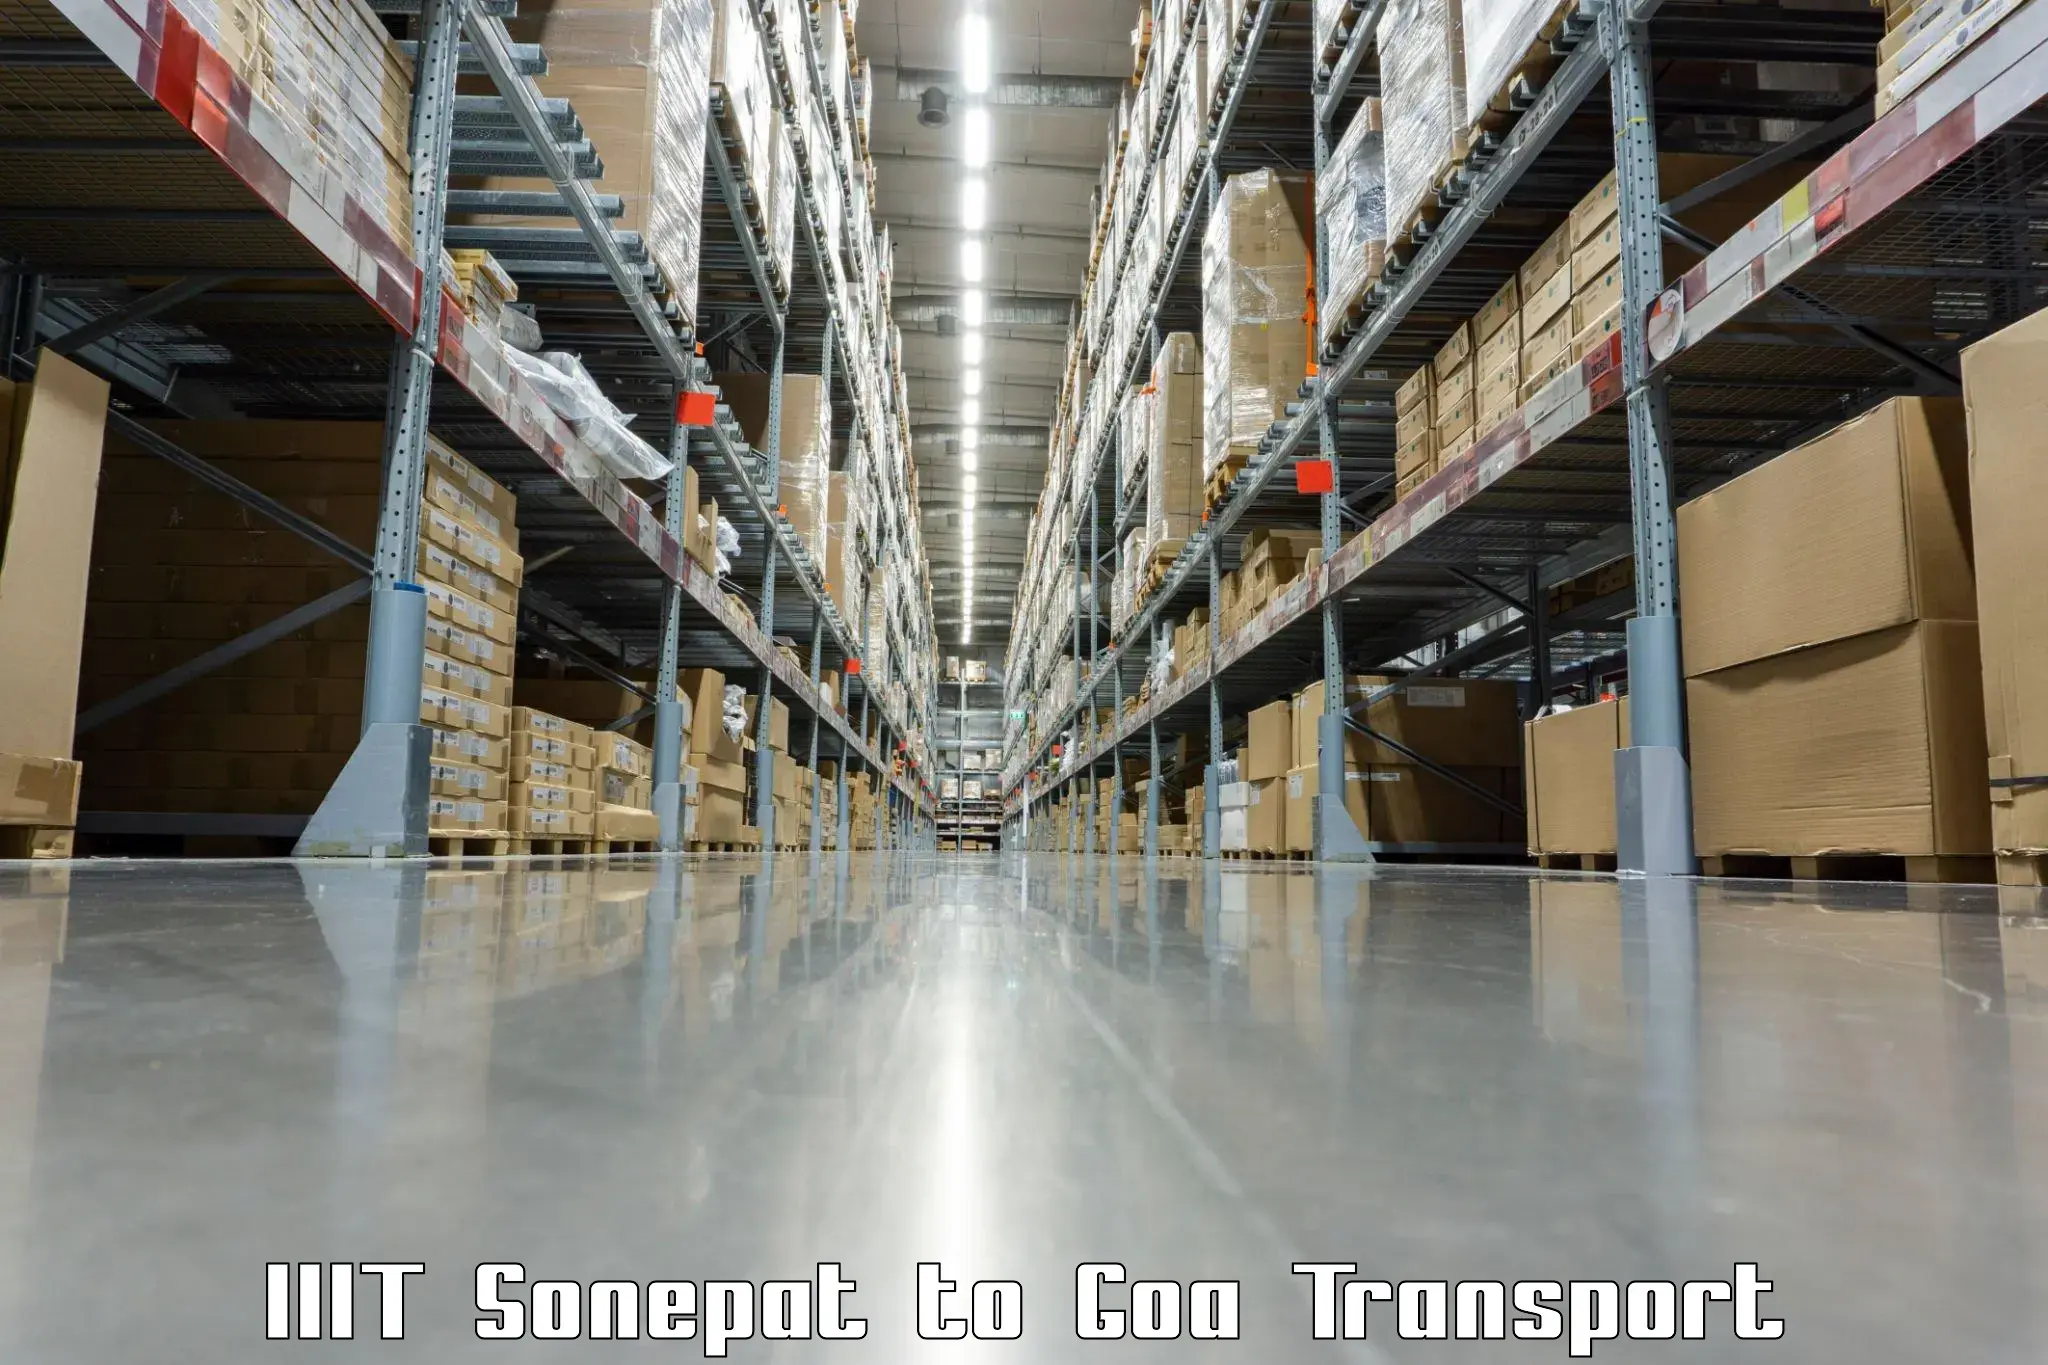 Road transport online services in IIIT Sonepat to Goa